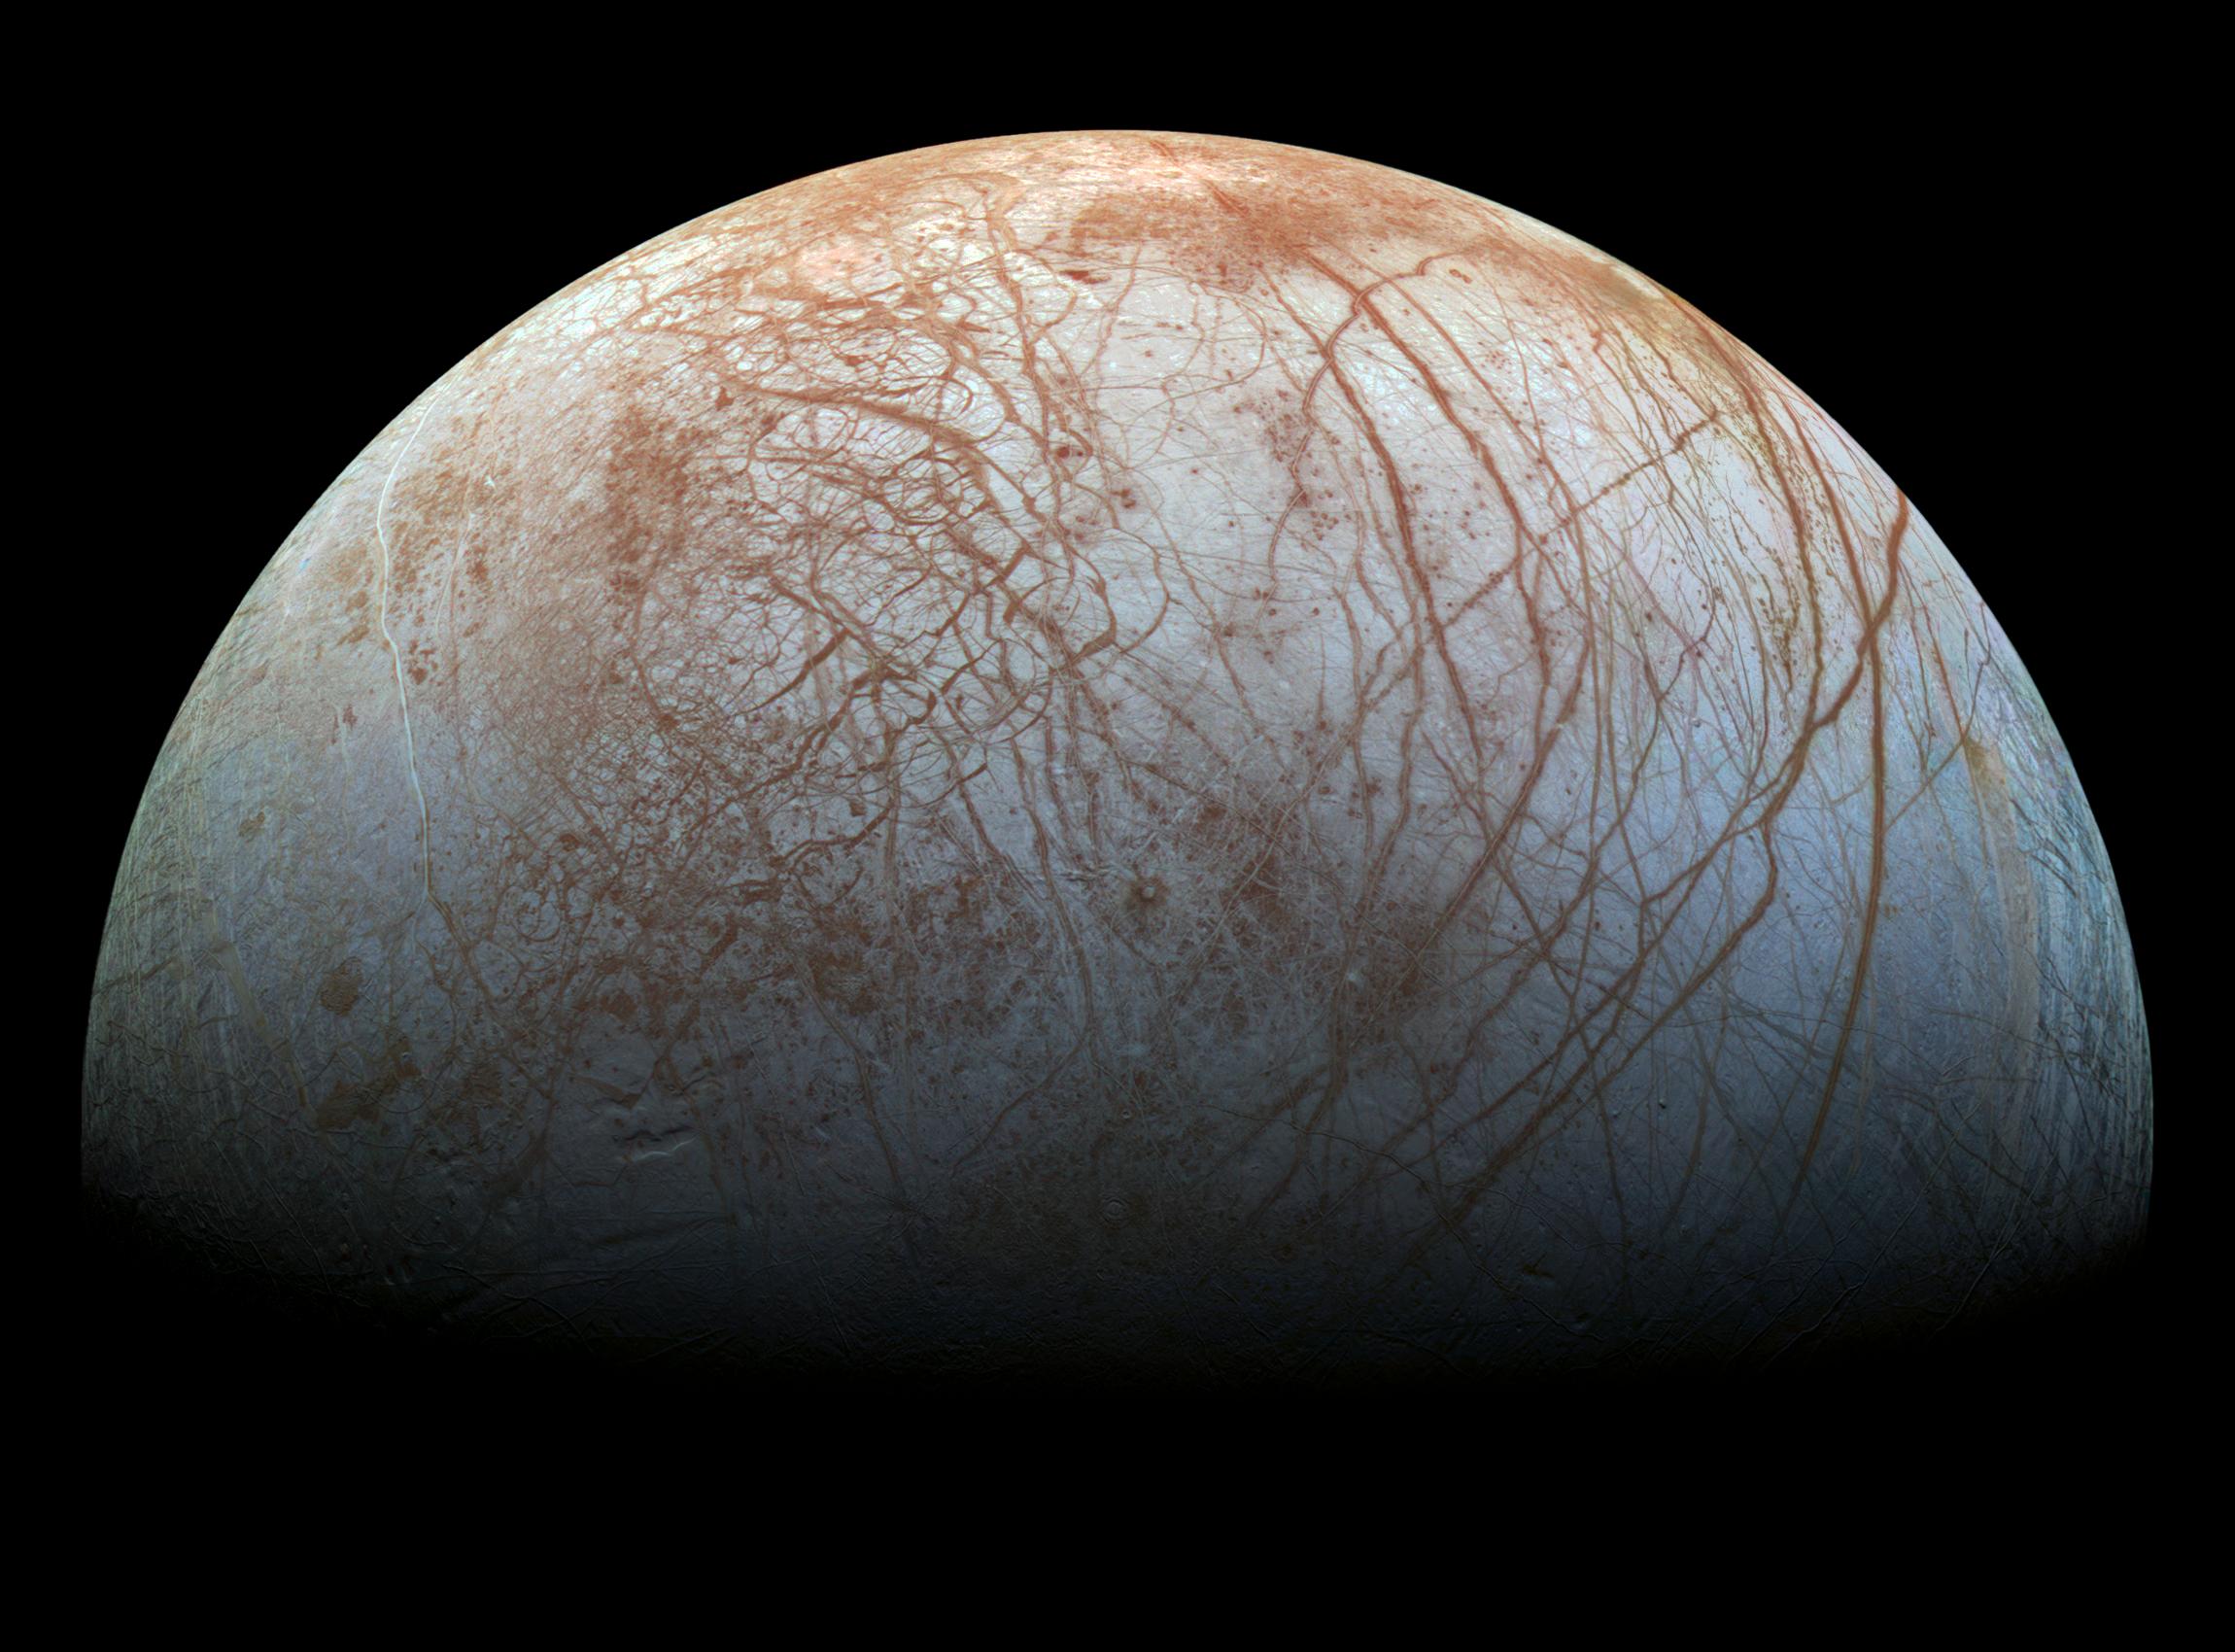 Photo courtesy NASA/JPL-Caltech/SETI Institute